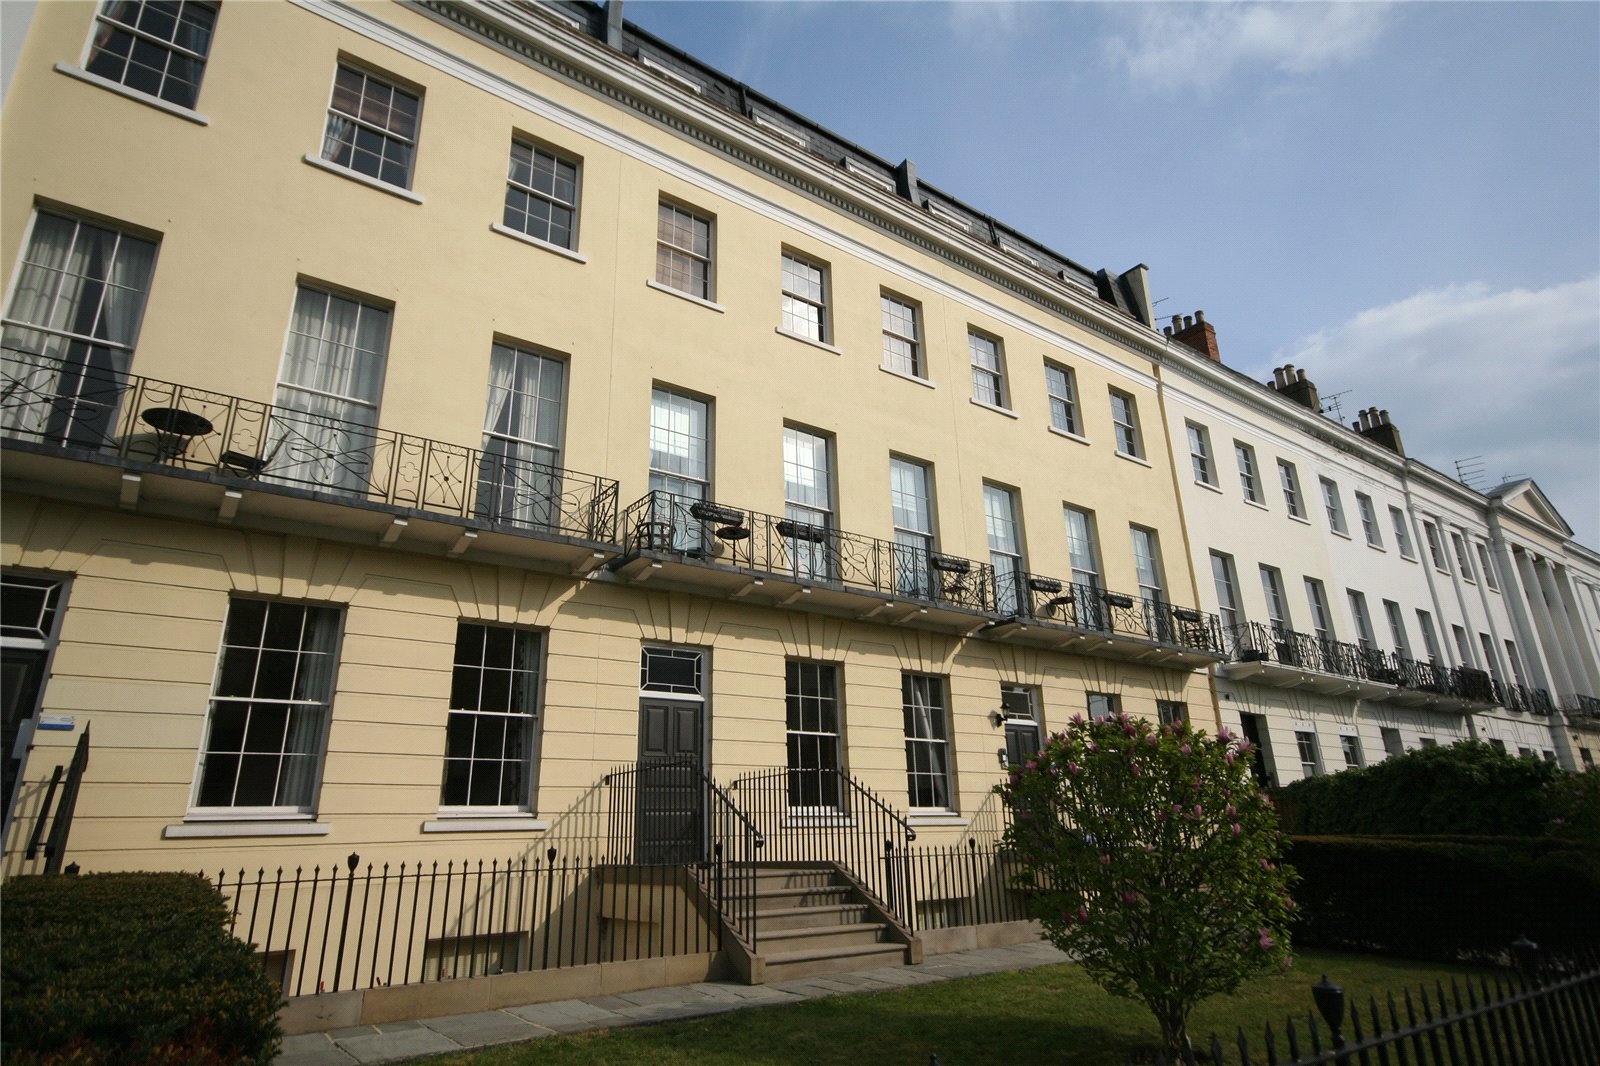 CJ Hole Cheltenham 2 bedroom Flat to rent in Grosvenor House, Evesham ...